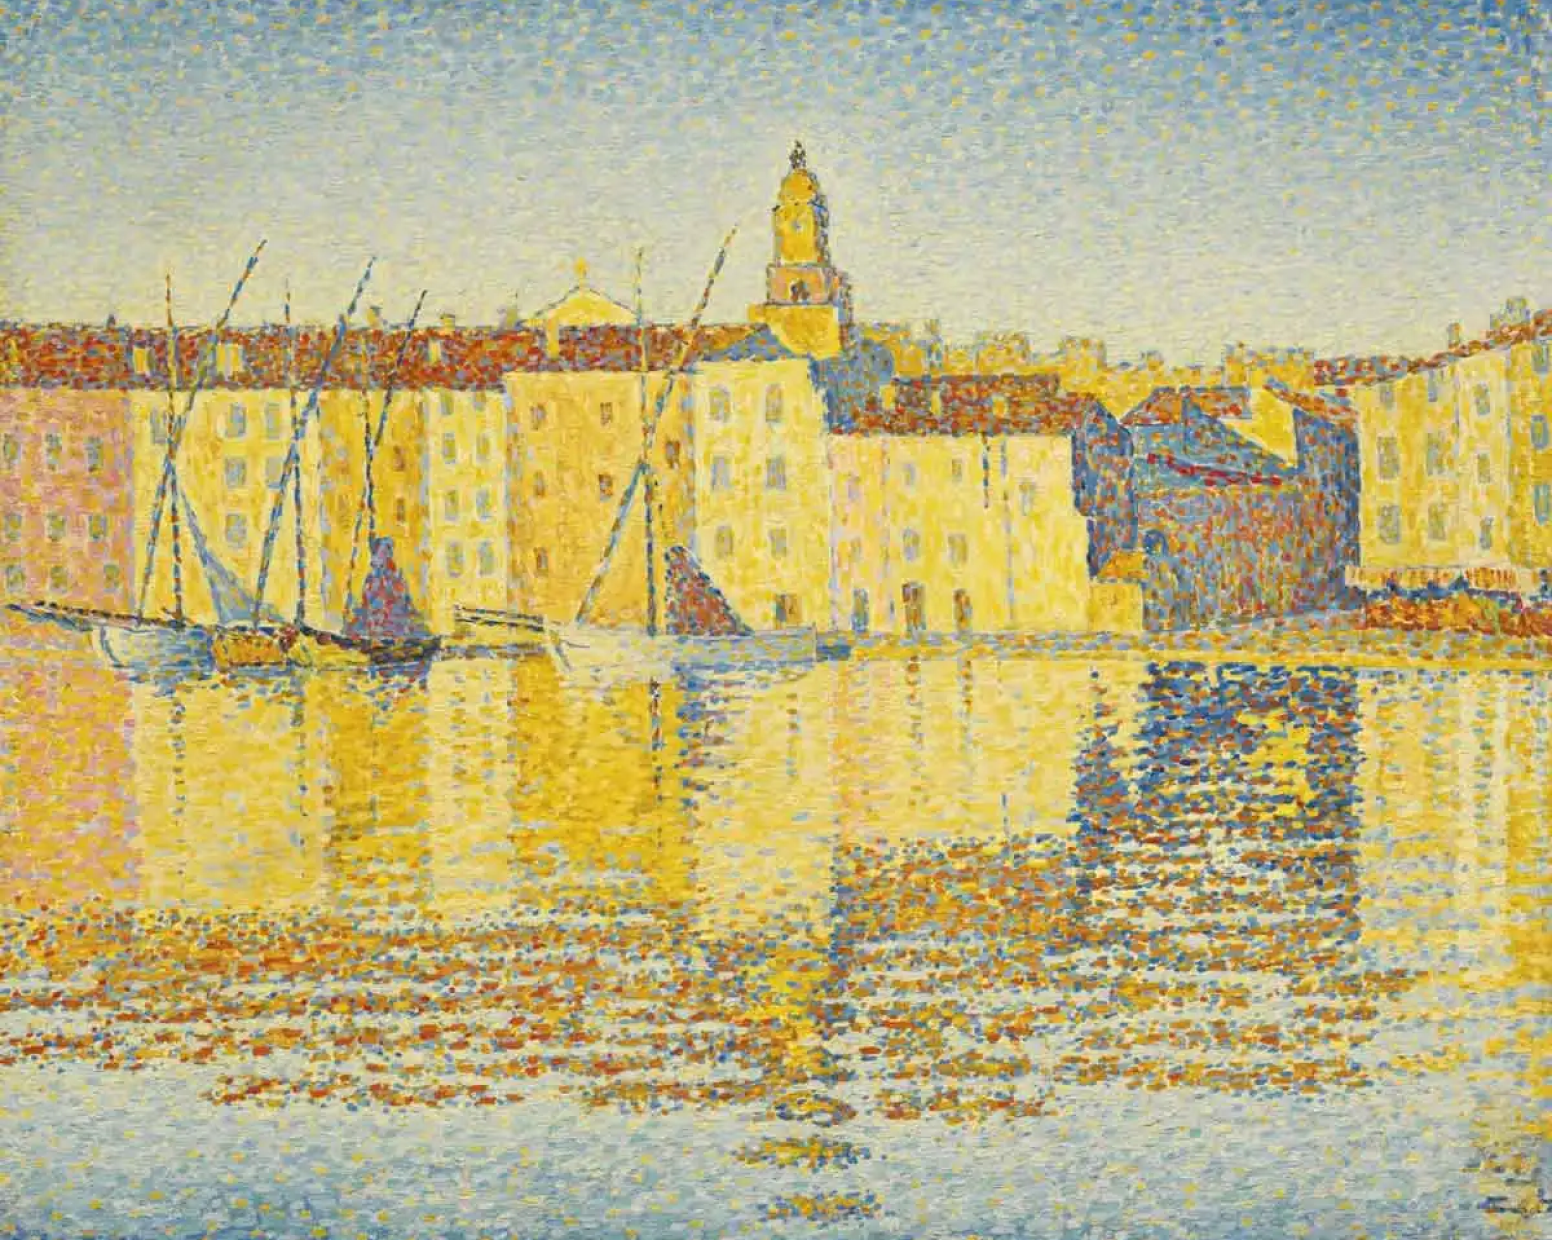 Maisons du port, Saint-Tropez by Paul Signac, 1892